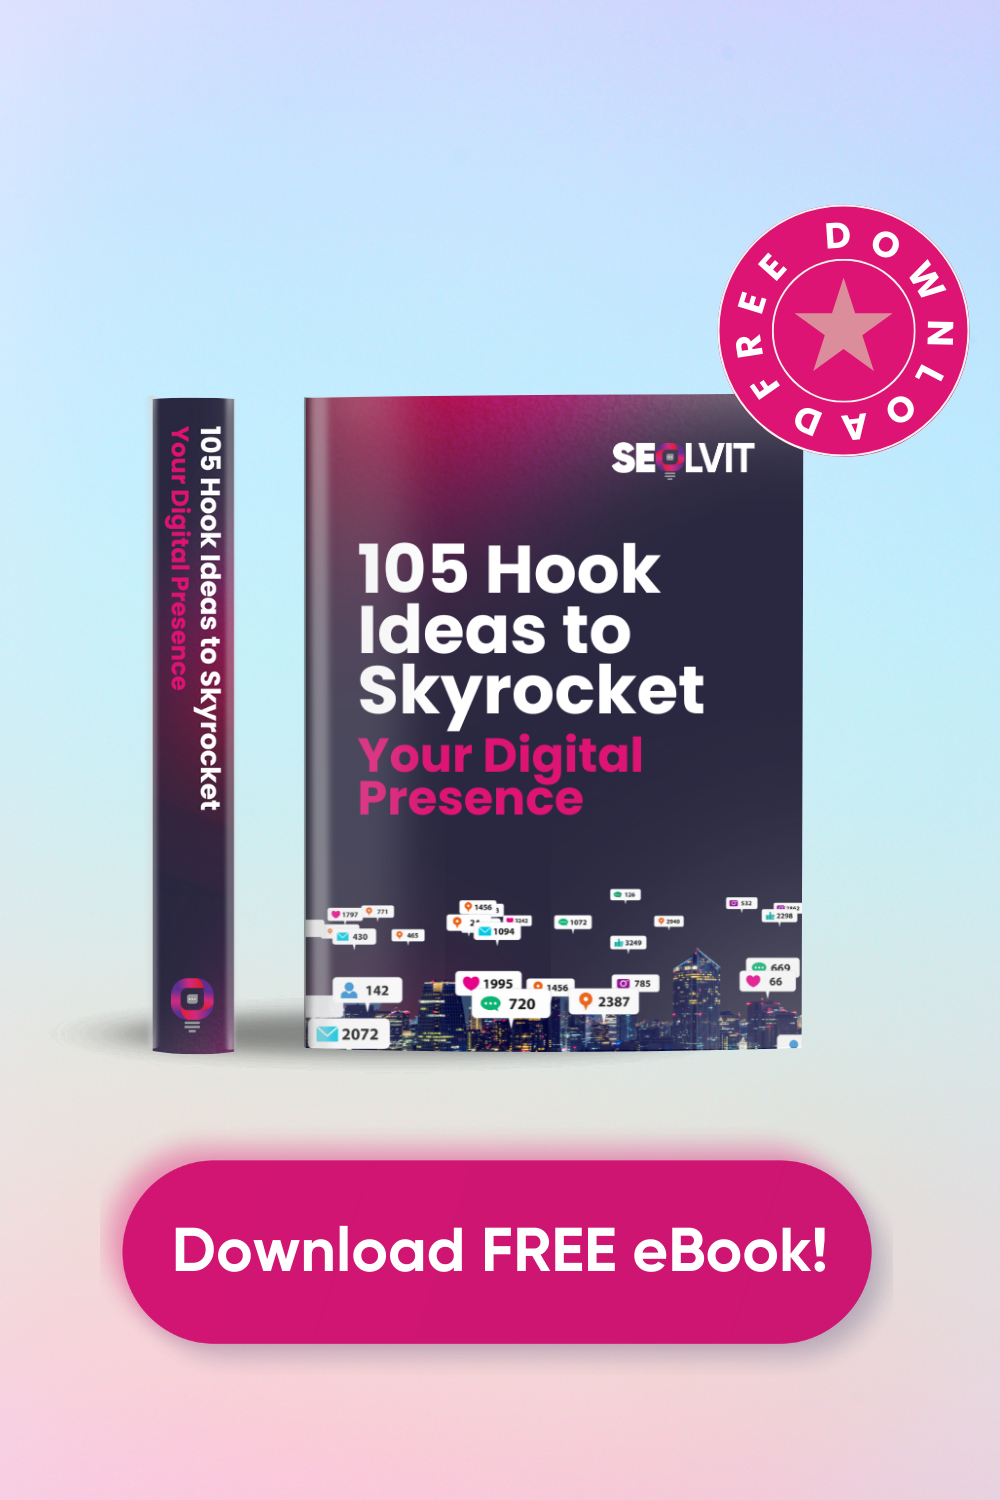 105 Hook Ideas to Skyrocket Your Digital Presence - FREE Ebook by Seolvit Marketing Agency